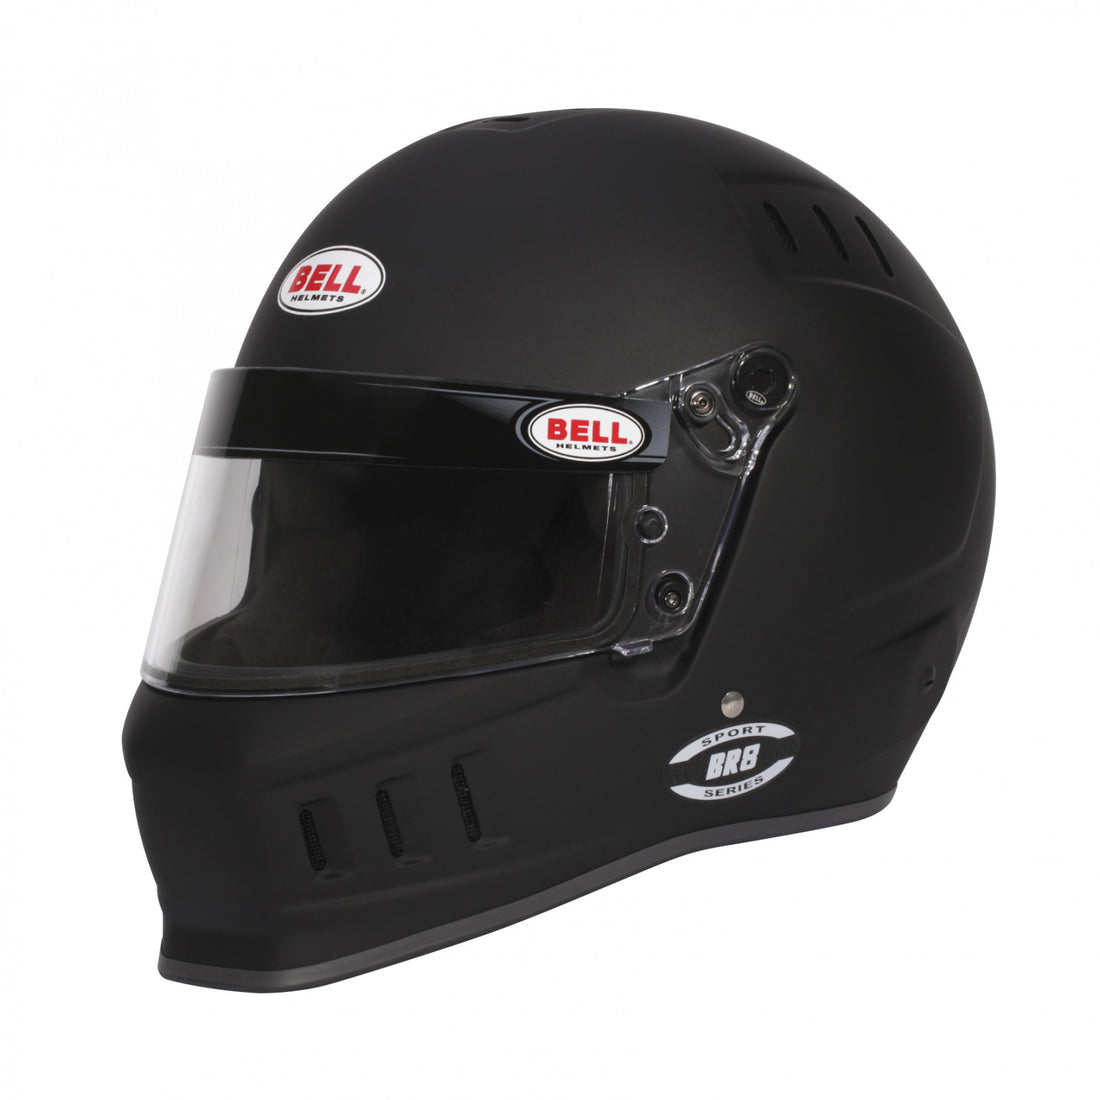 Bell BR8 Matte Black Helmet Size Extra Large